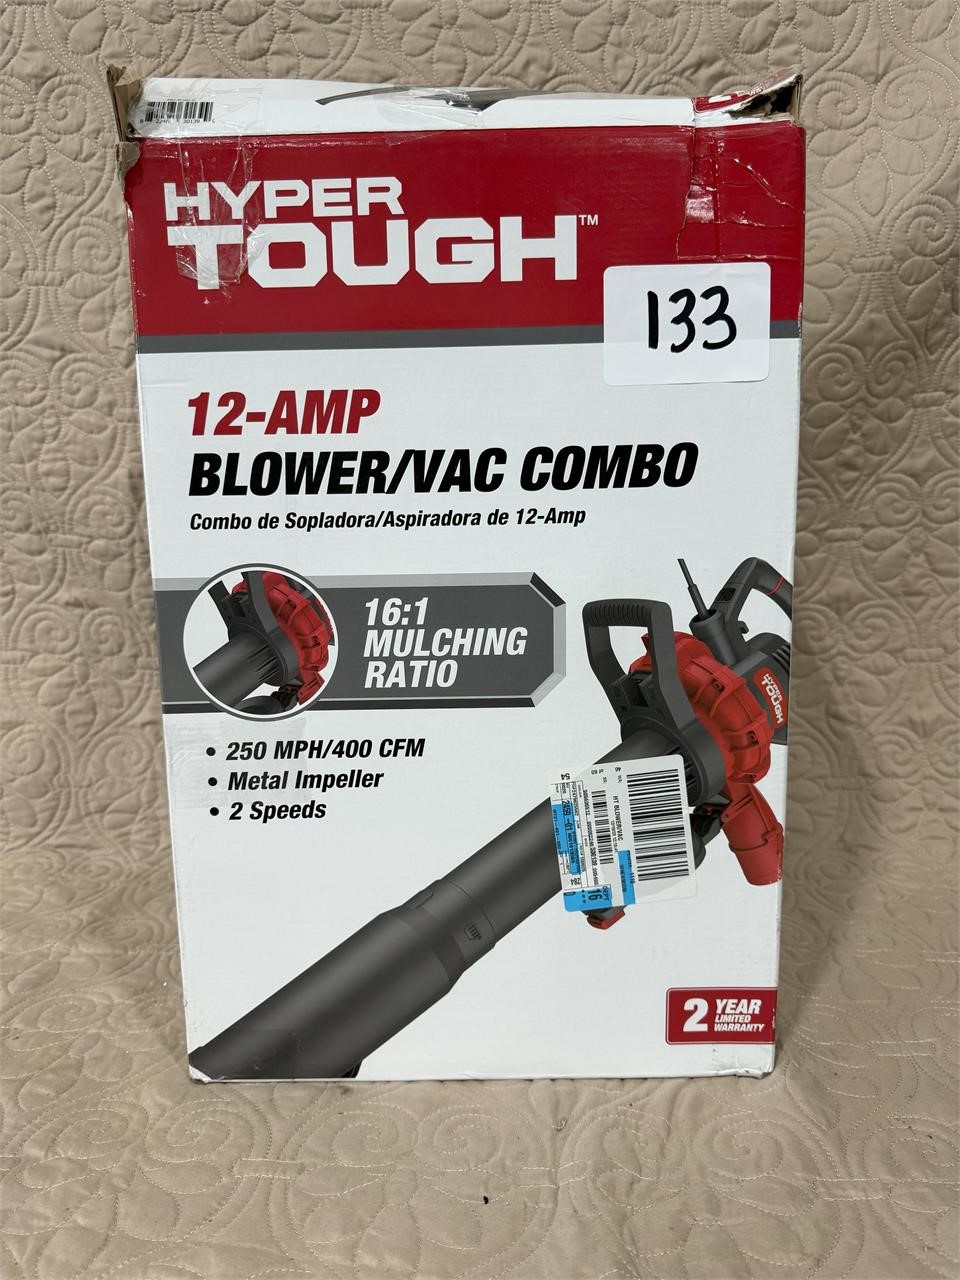 Hyper Tough Blower Vac Combo